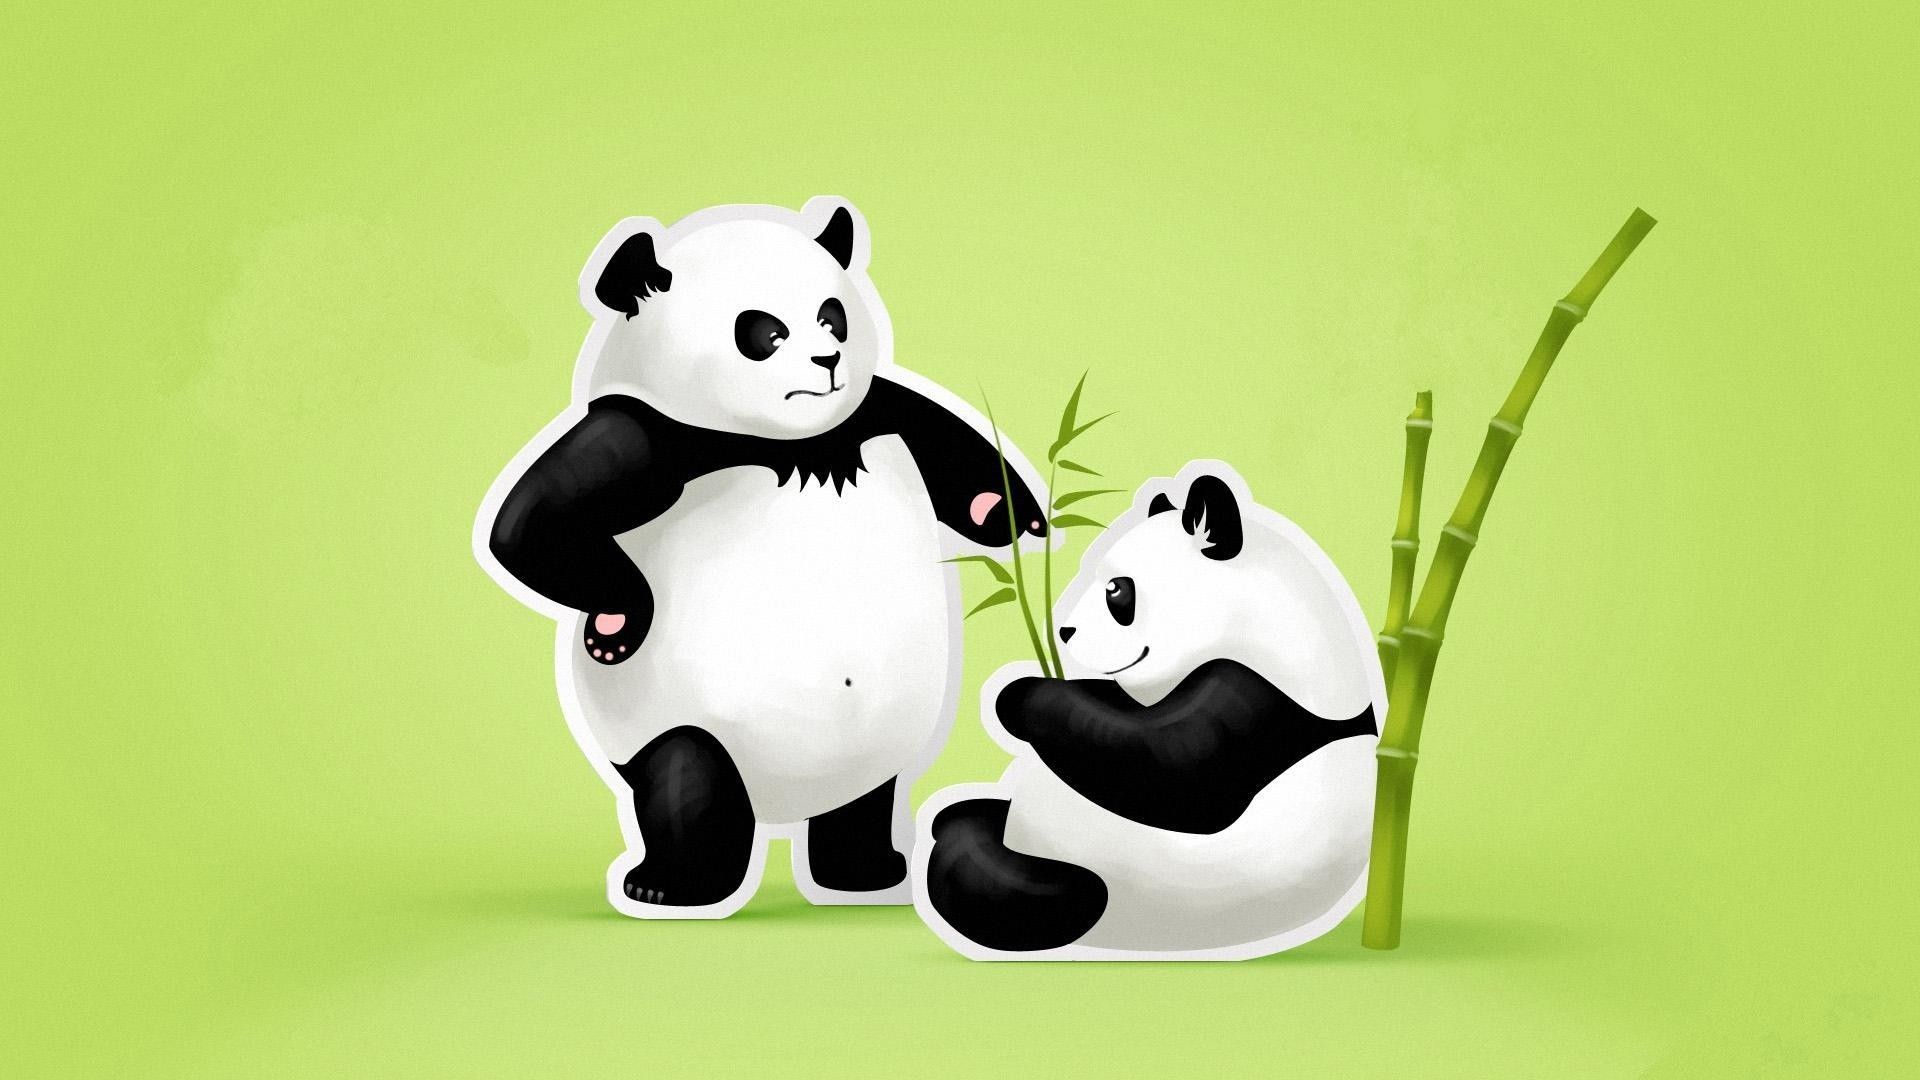 Cute Panda Couple Wallpaper HD. Best HD Wallpaper. Cute panda wallpaper, Panda wallpaper, Cartoon wallpaper